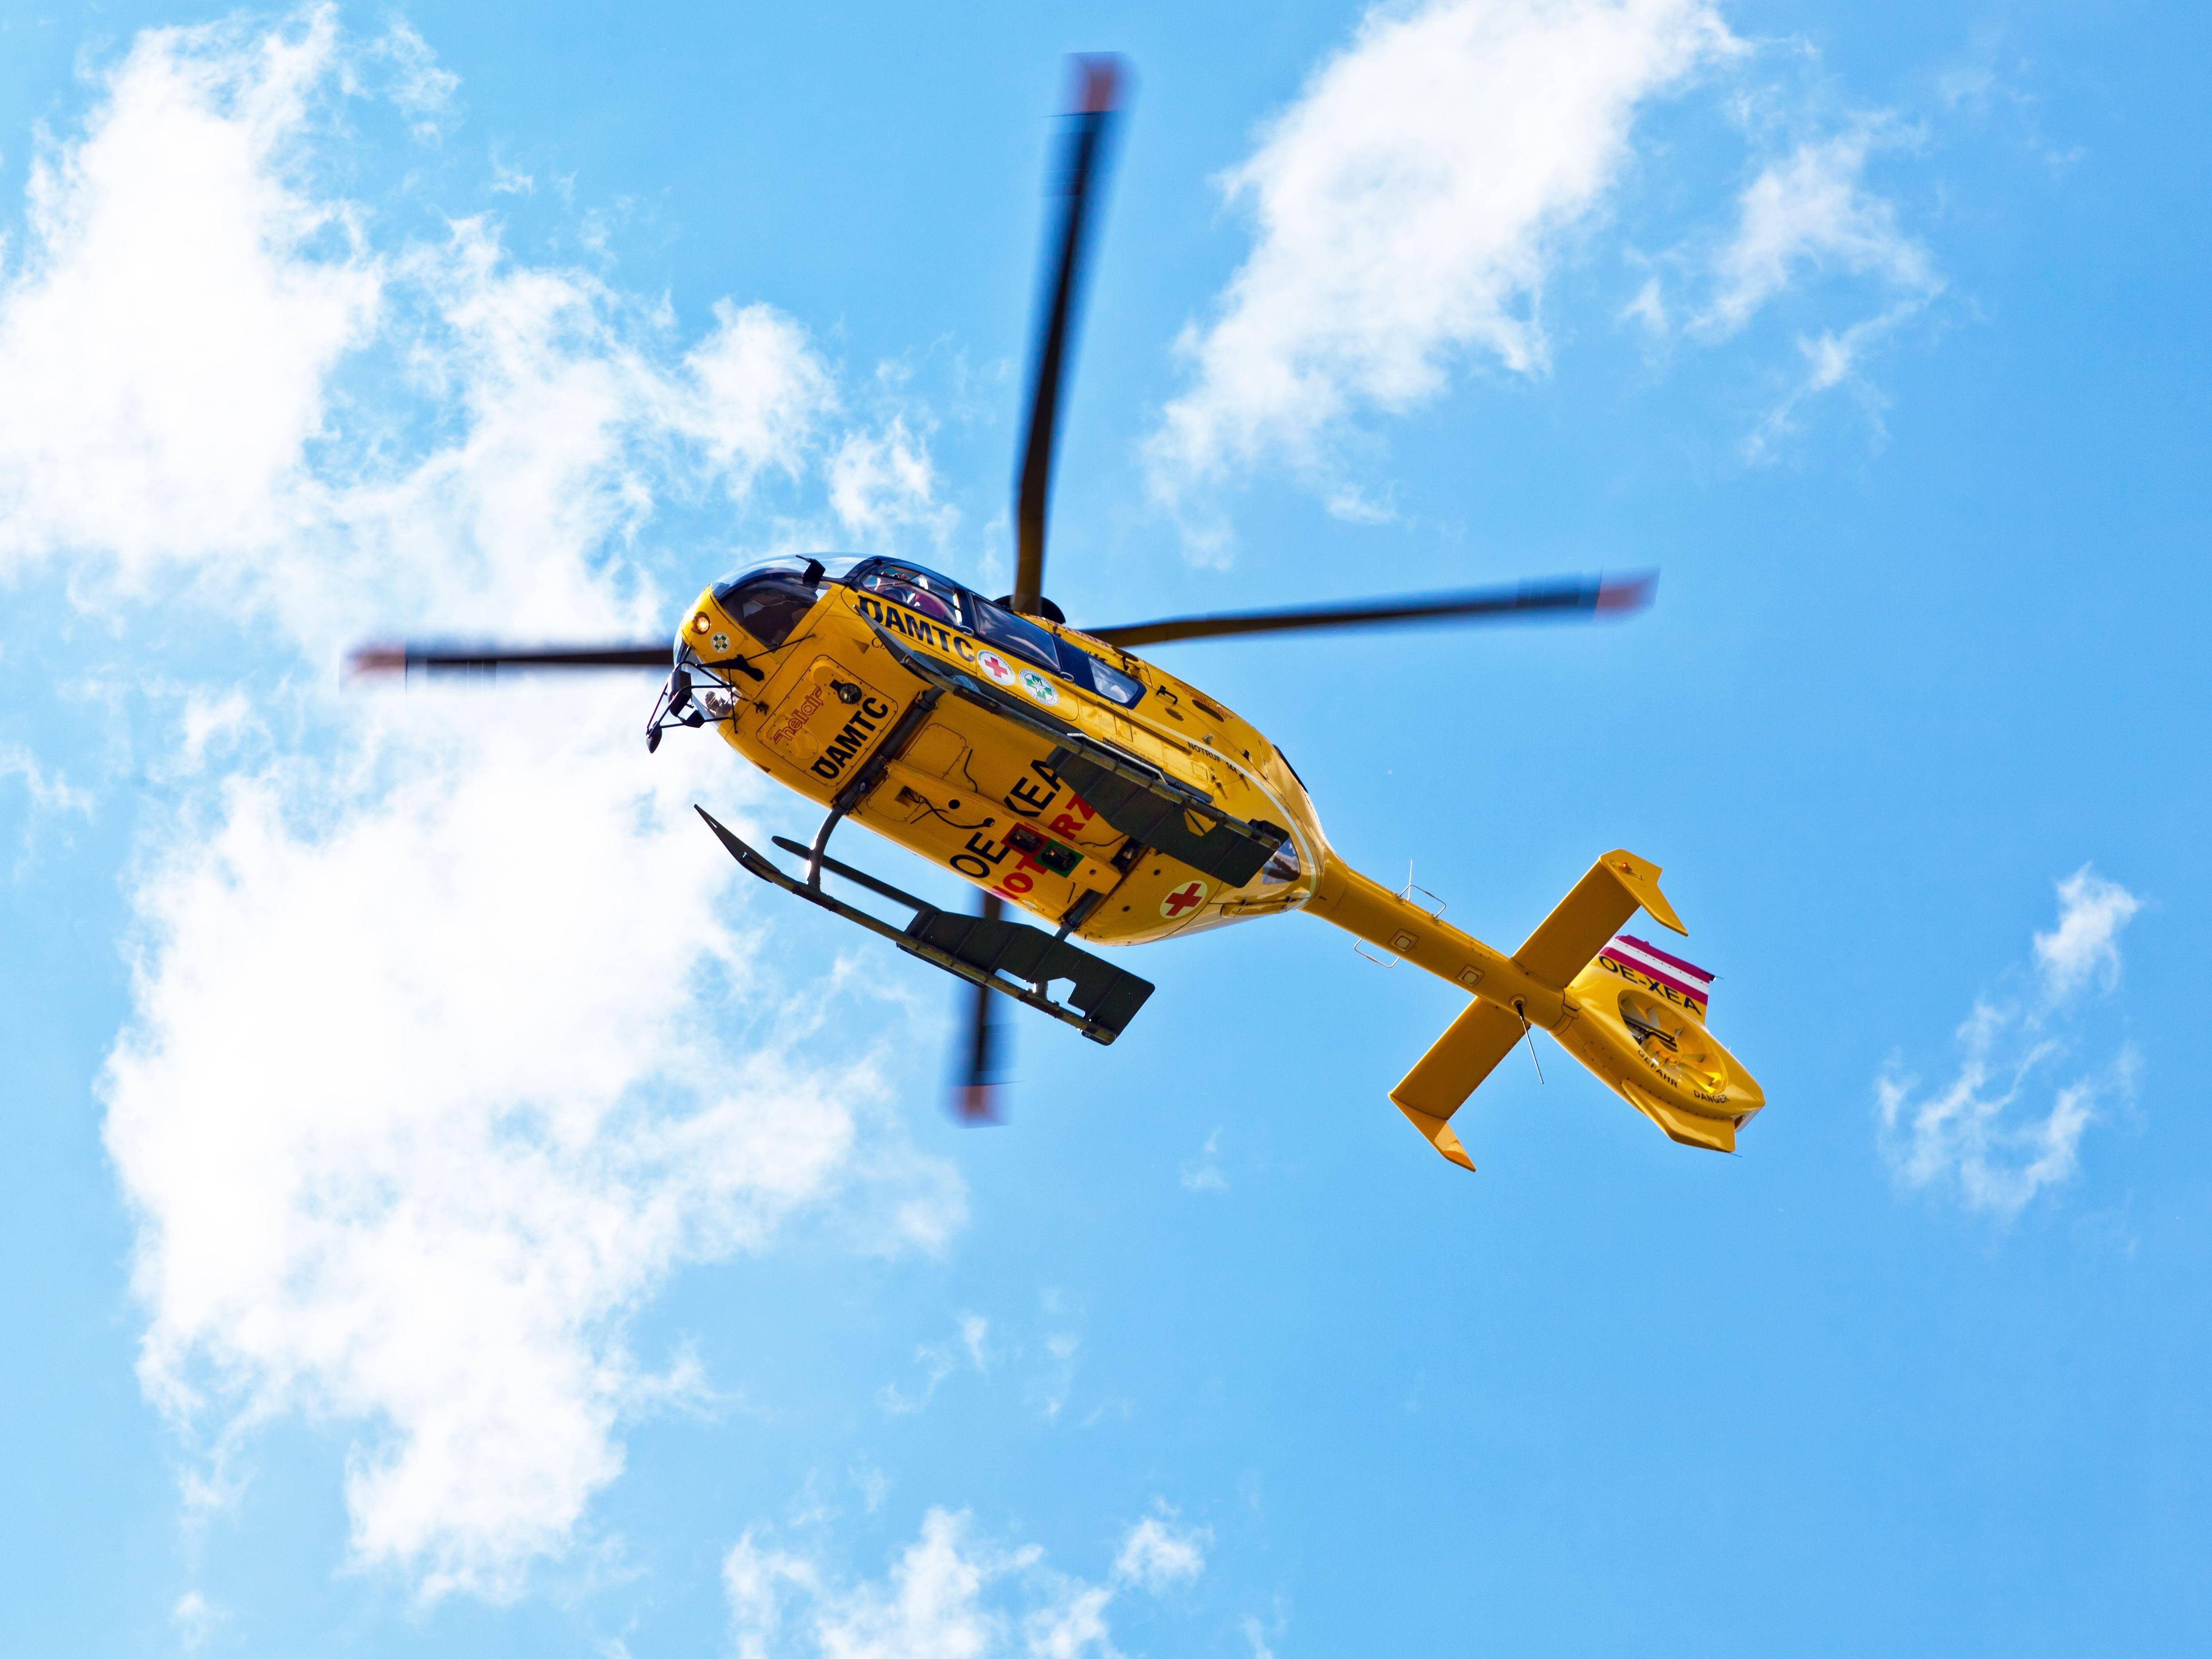 Der verletzte Wiener musste mit dem Hubschrauber ins Krankenhaus geflogen werden